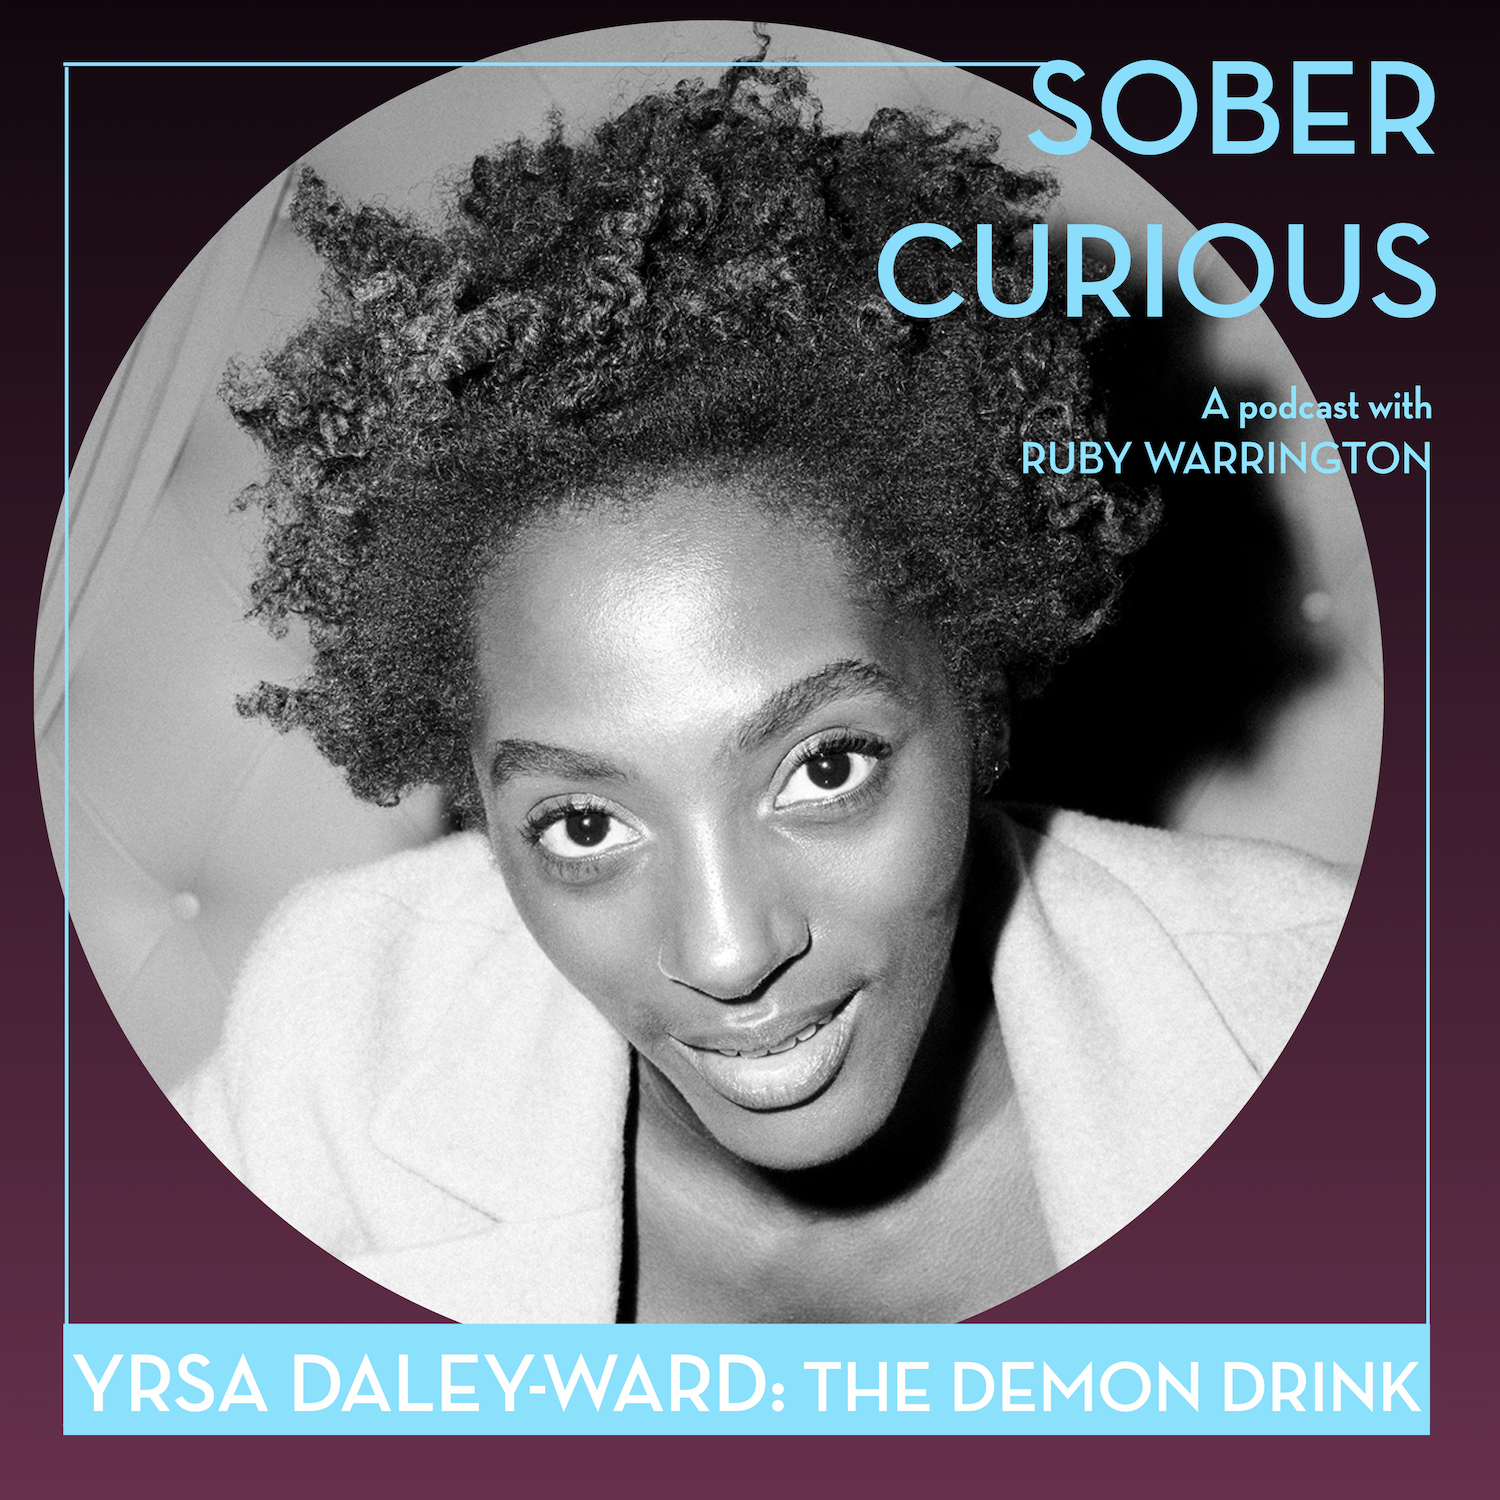 Yrsa Daley-Ward Sober Curious podcast Ruby Warrington